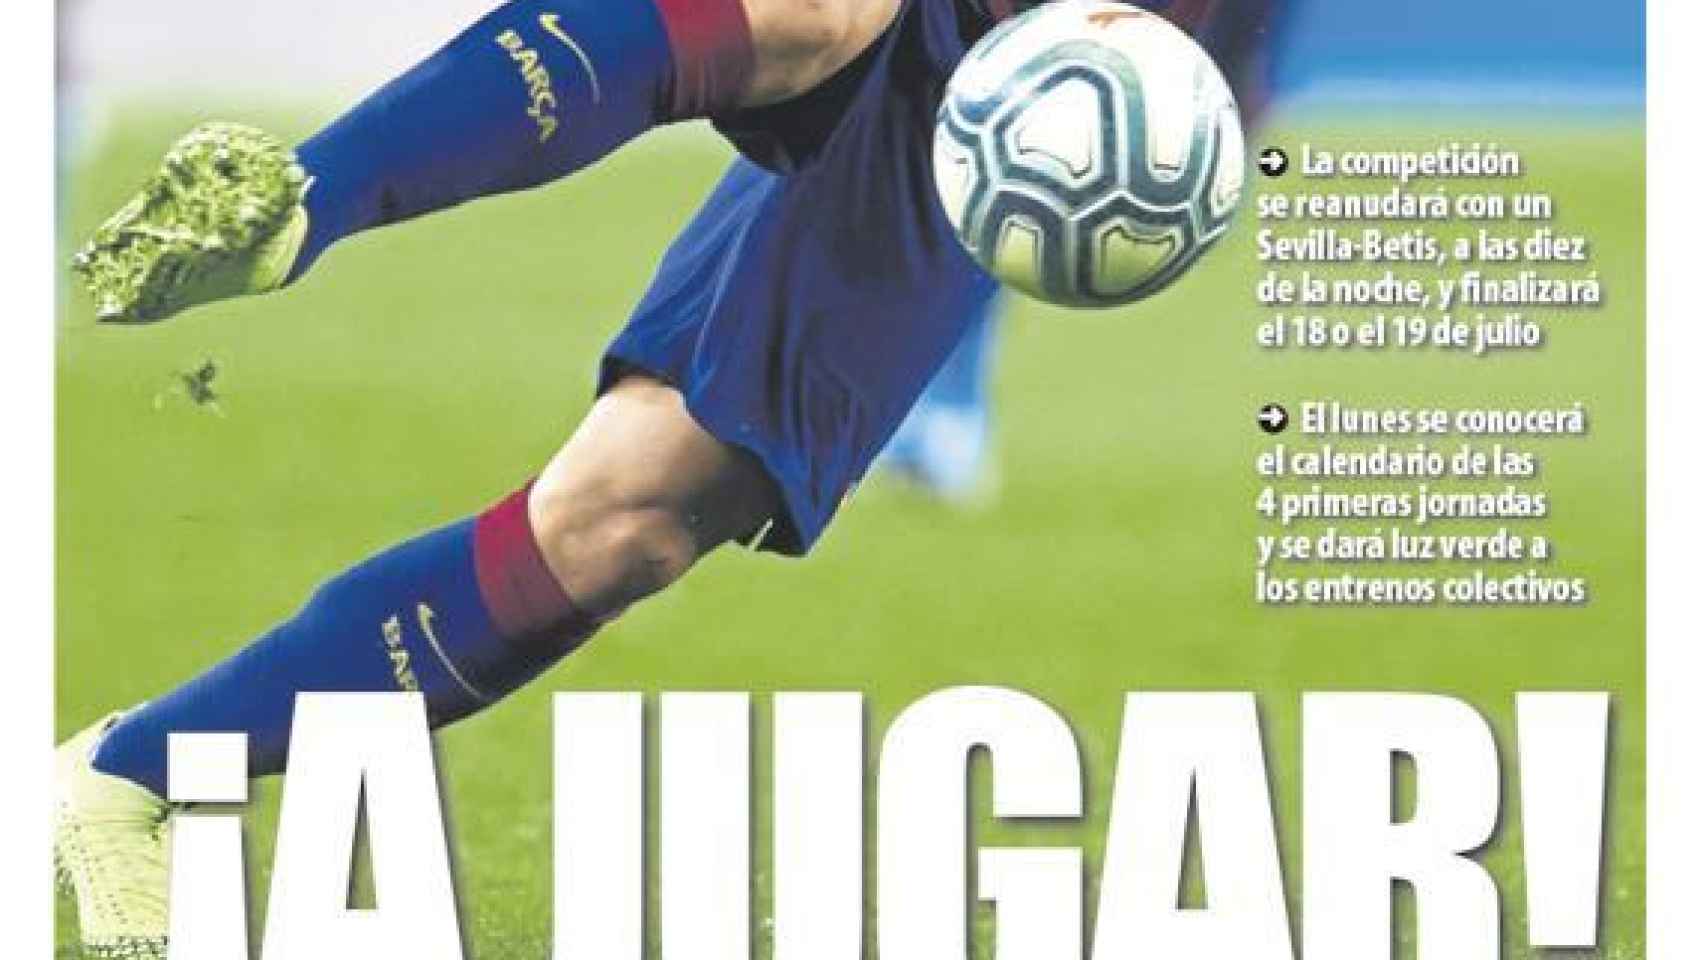 La portada del diario Mundo Deportivo (30/05/2020)